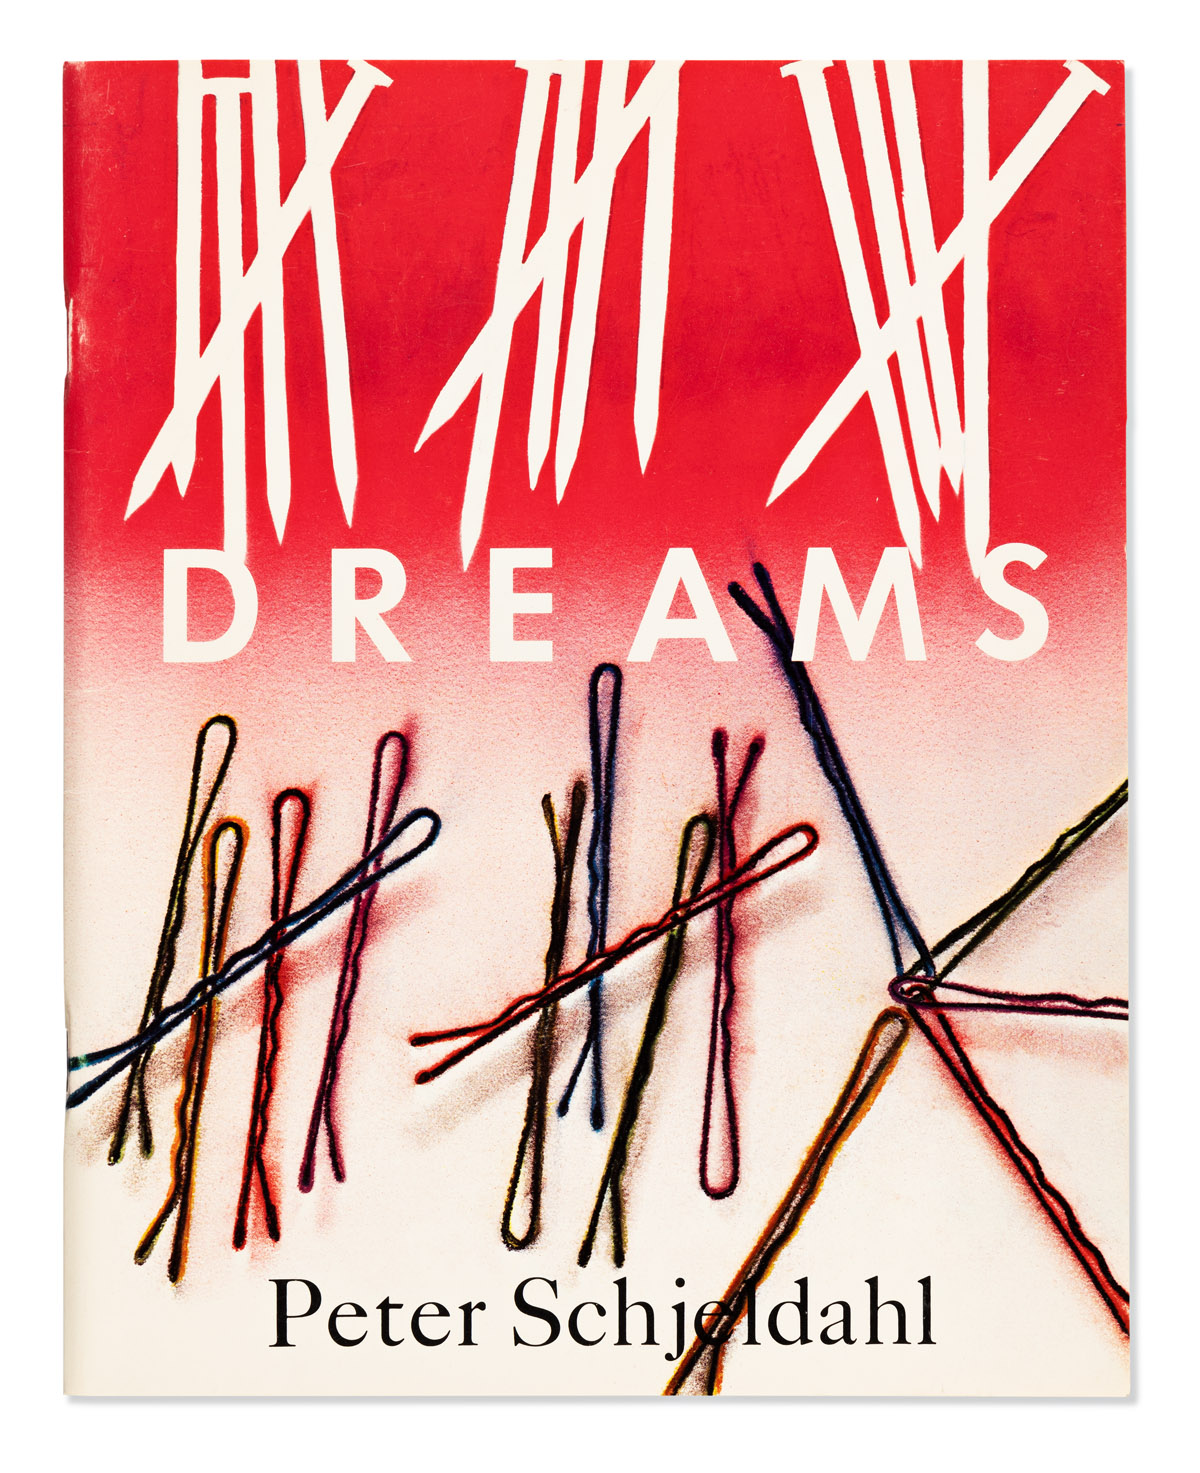 SCHJELDAHL, PETER. Dreams.